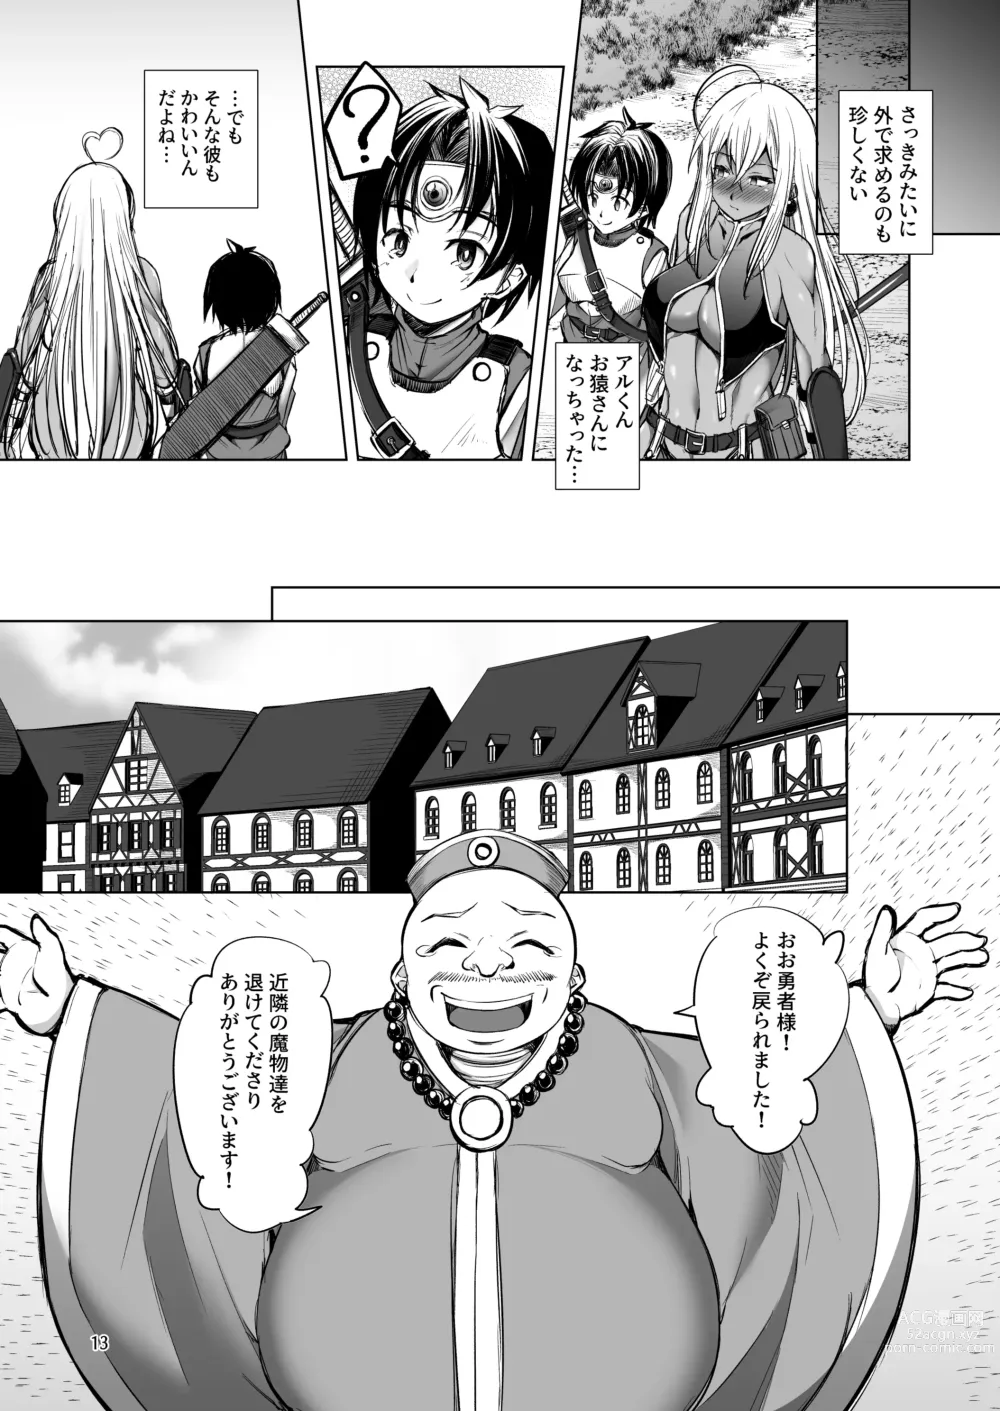 Page 12 of doujinshi Rozeria-san wa Kotowarenai.